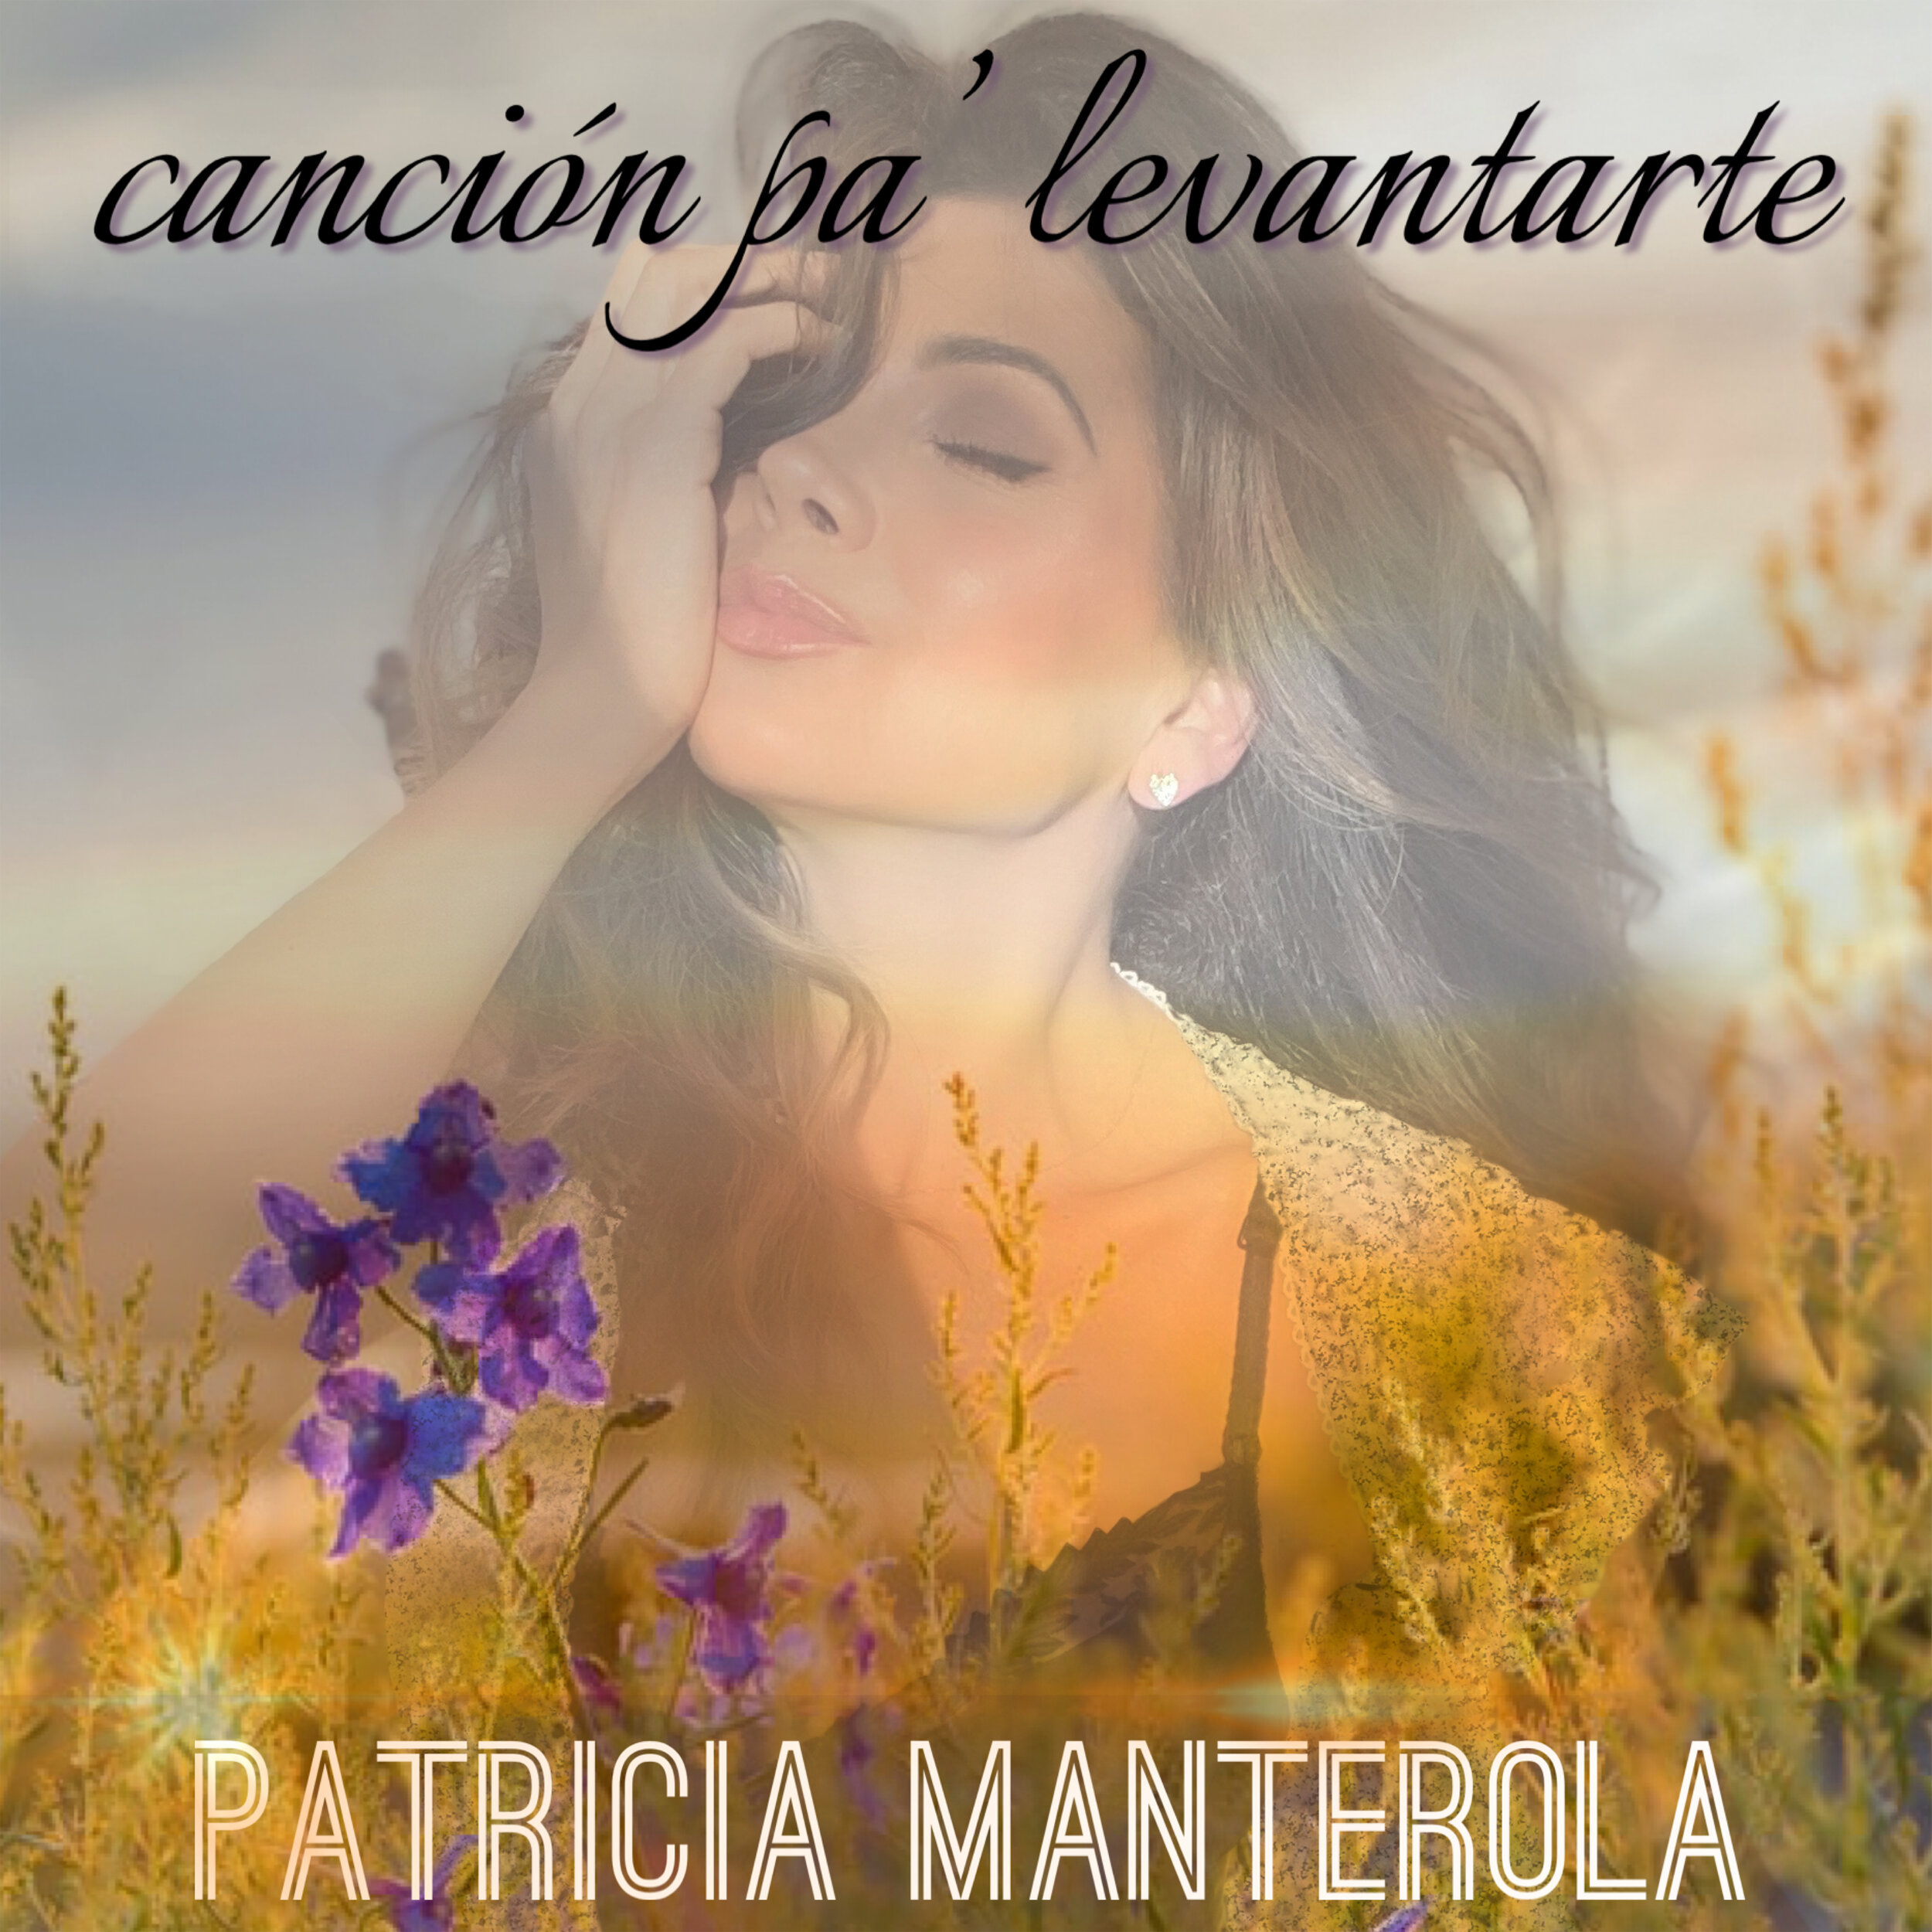 Cancion pa levantarte COVER Patricia Manterola.JPG